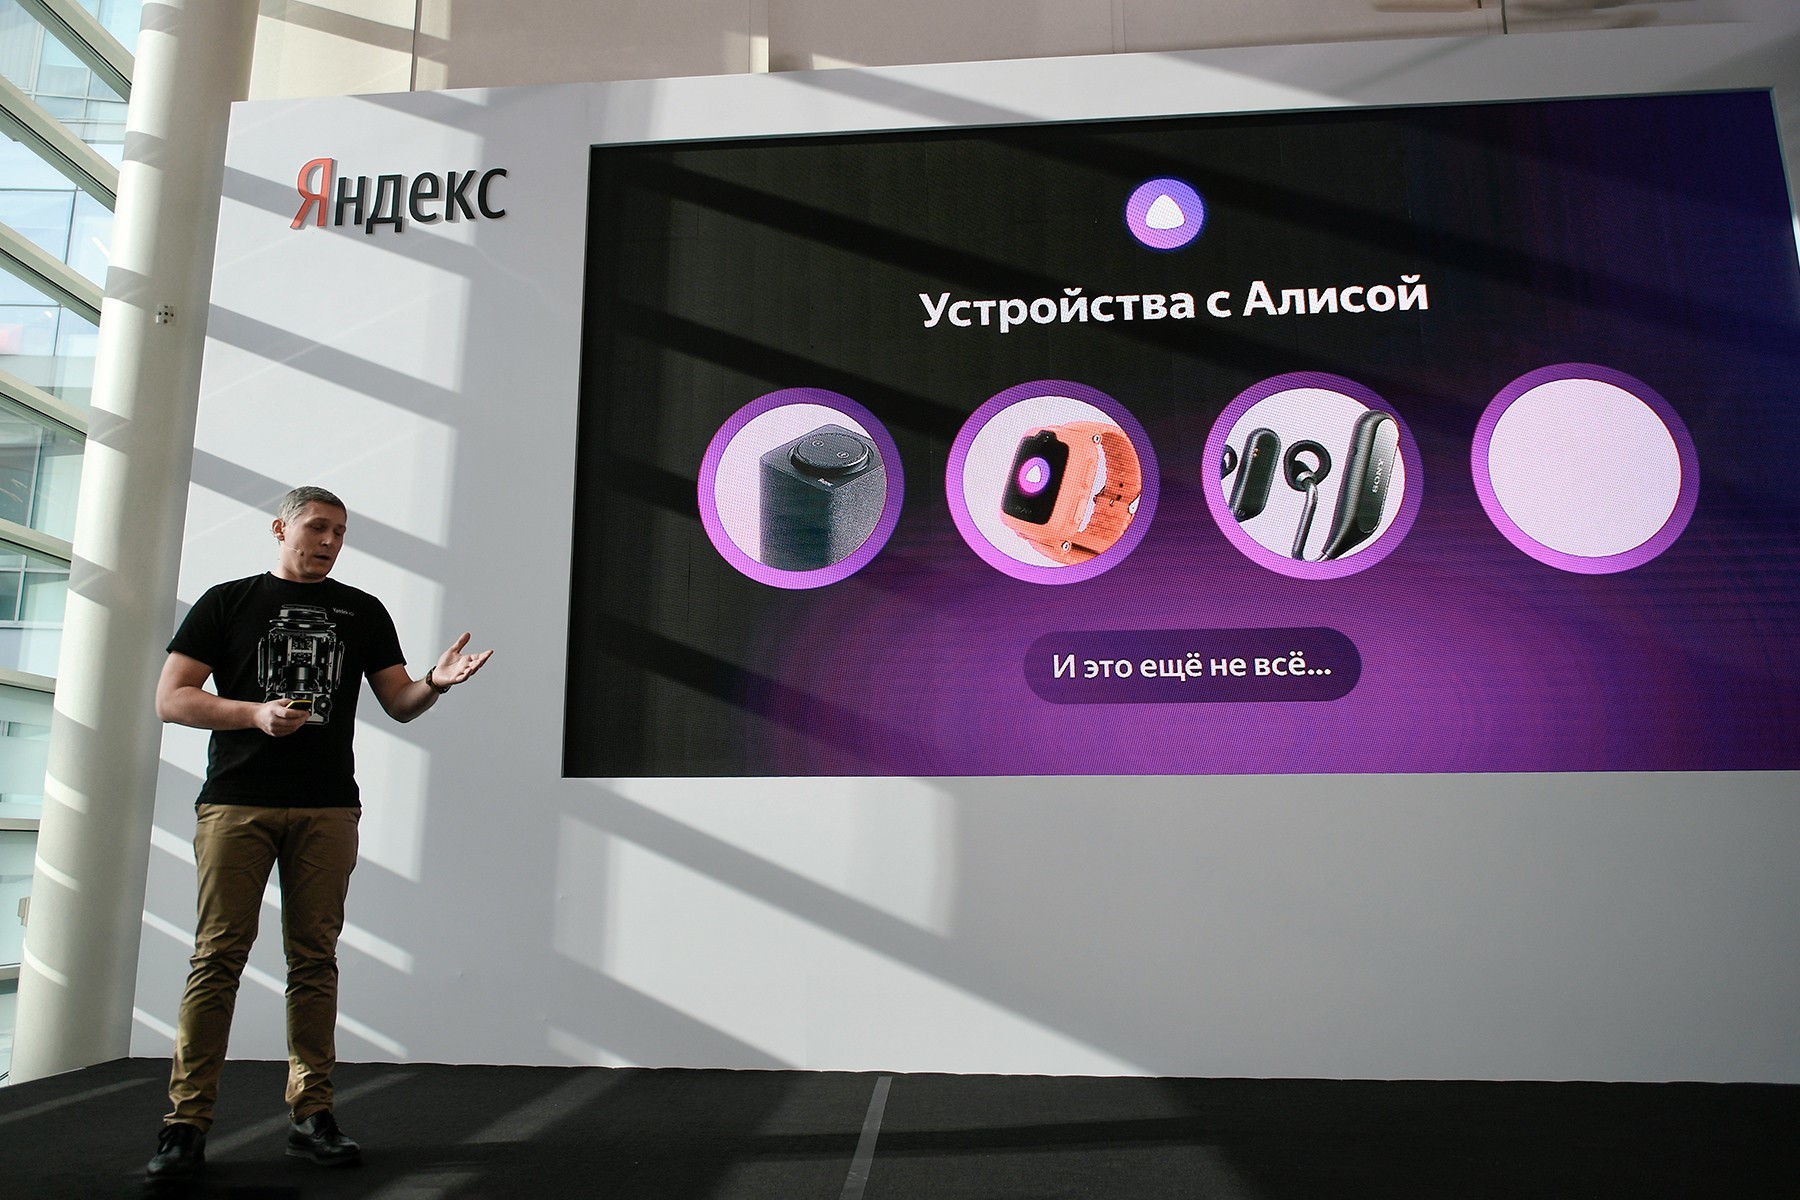 Yandexov direktor eksperimentalnih produktov Konstantin Kruglov predstavlja nove storitve in nadgradnje iskalnika.